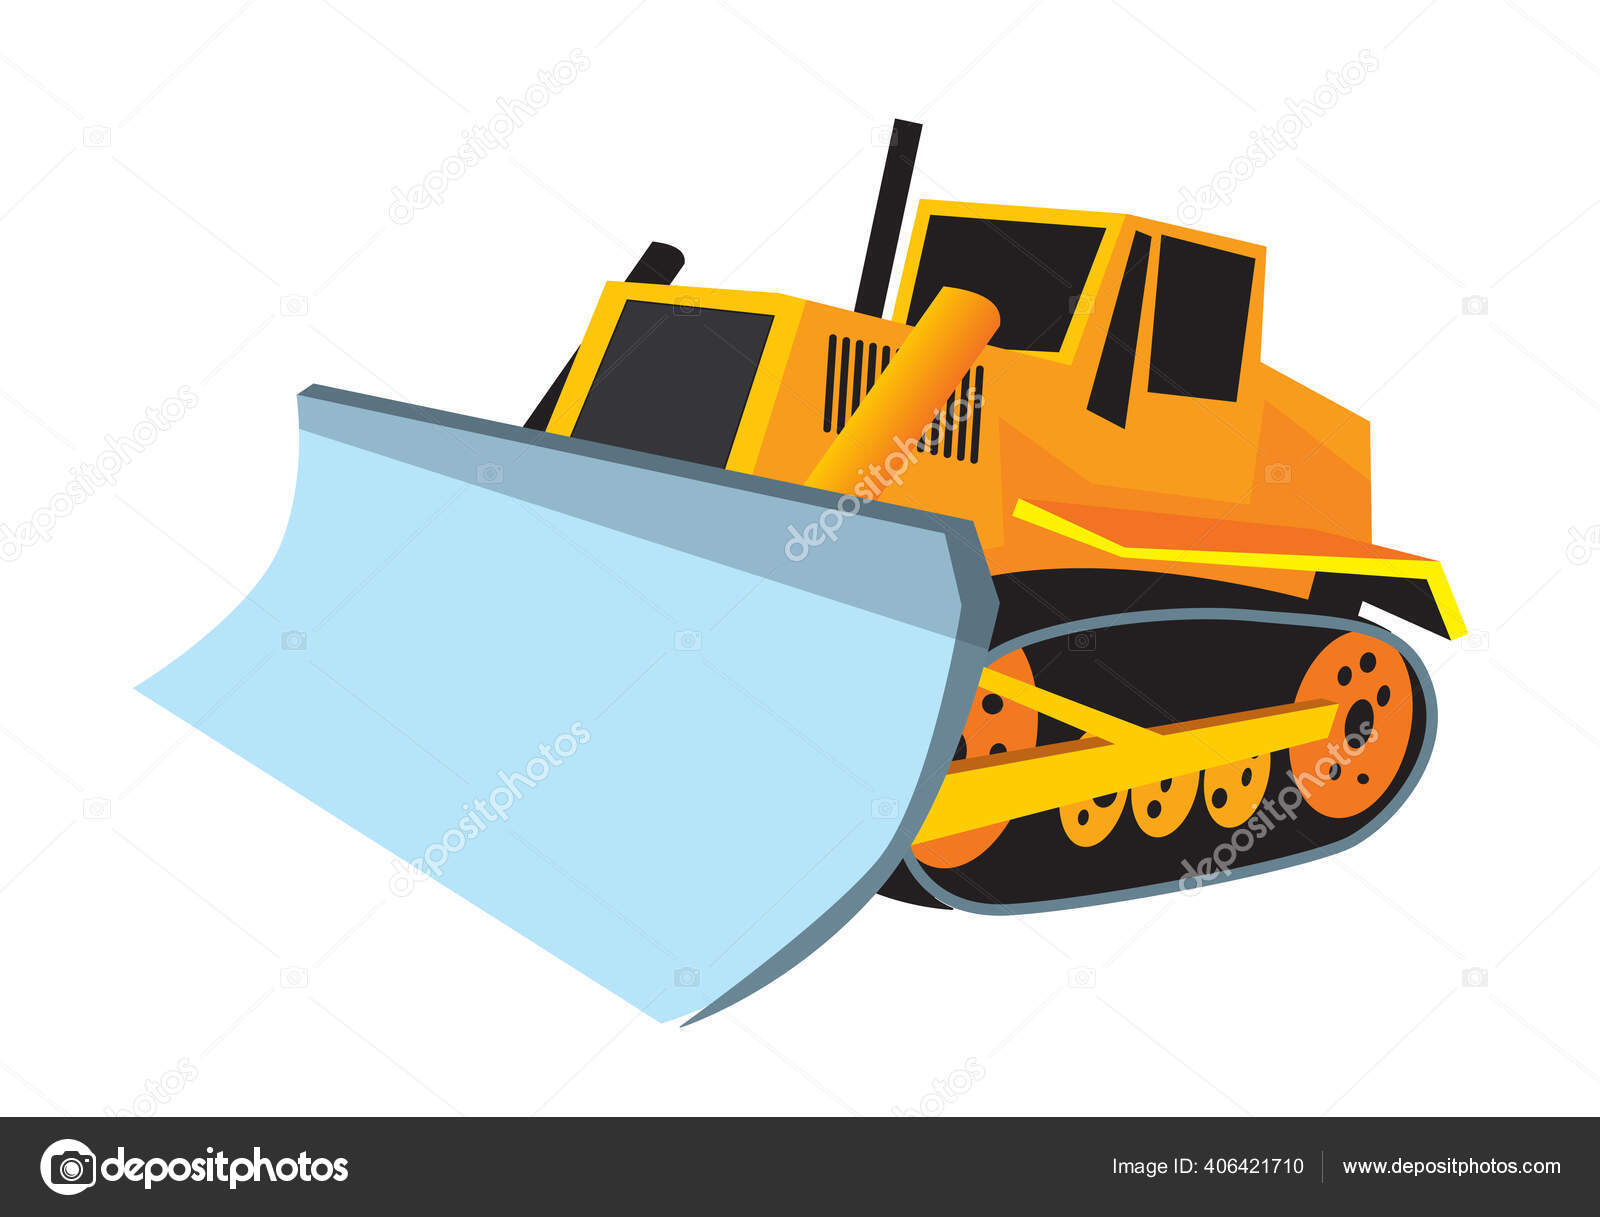 Trator de desenhos animados bulldozer imagem vetorial de Sybirko© 136759588